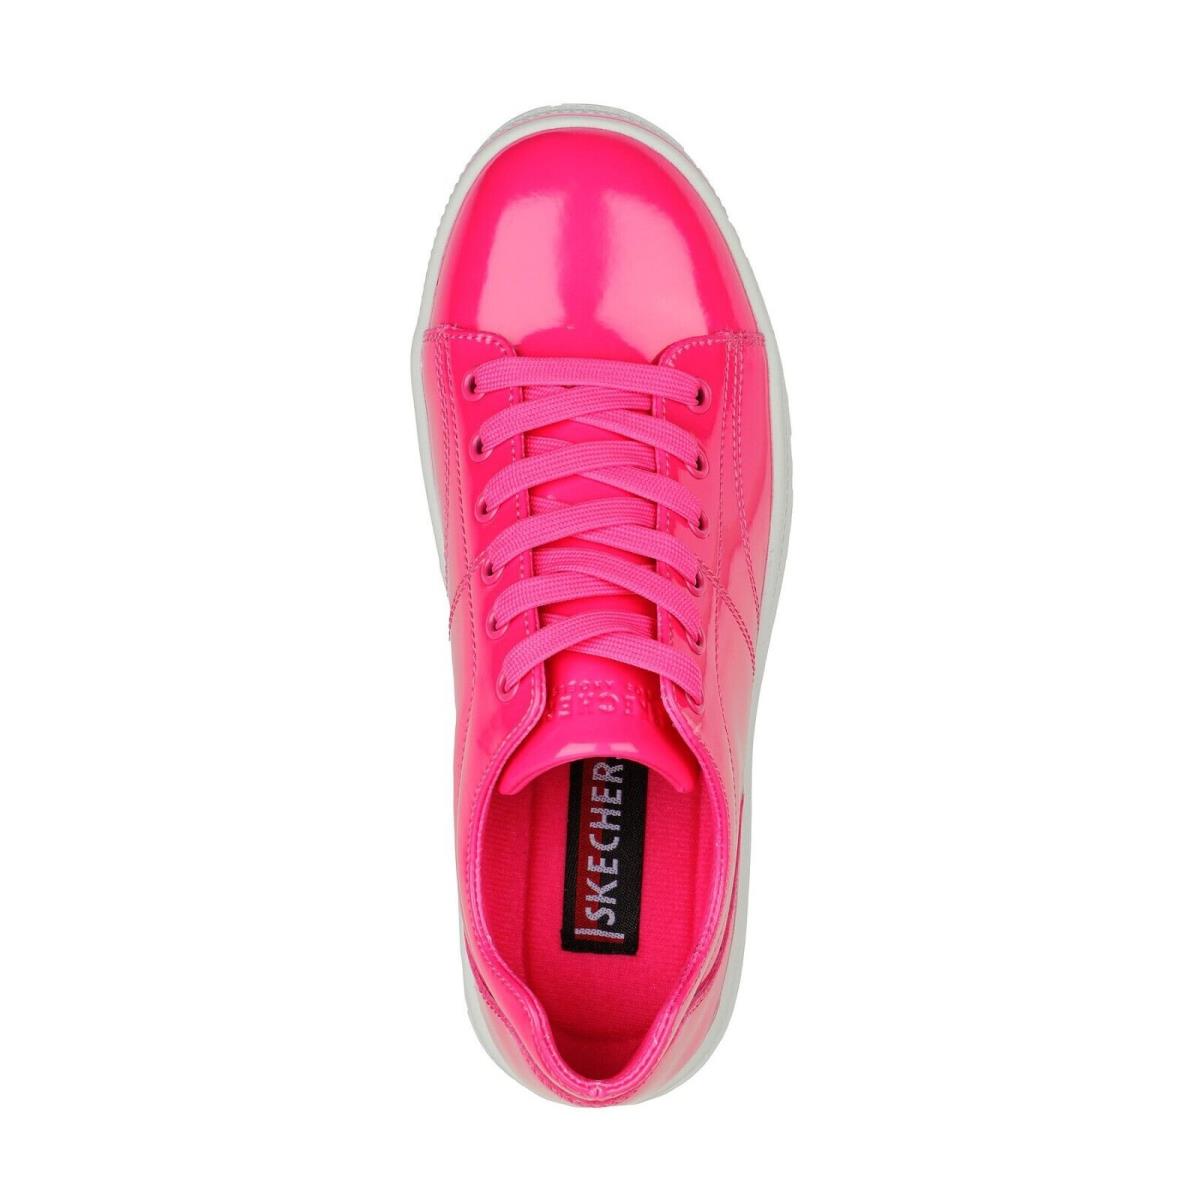 Skechers shoes Roadies - Hot Pink 1